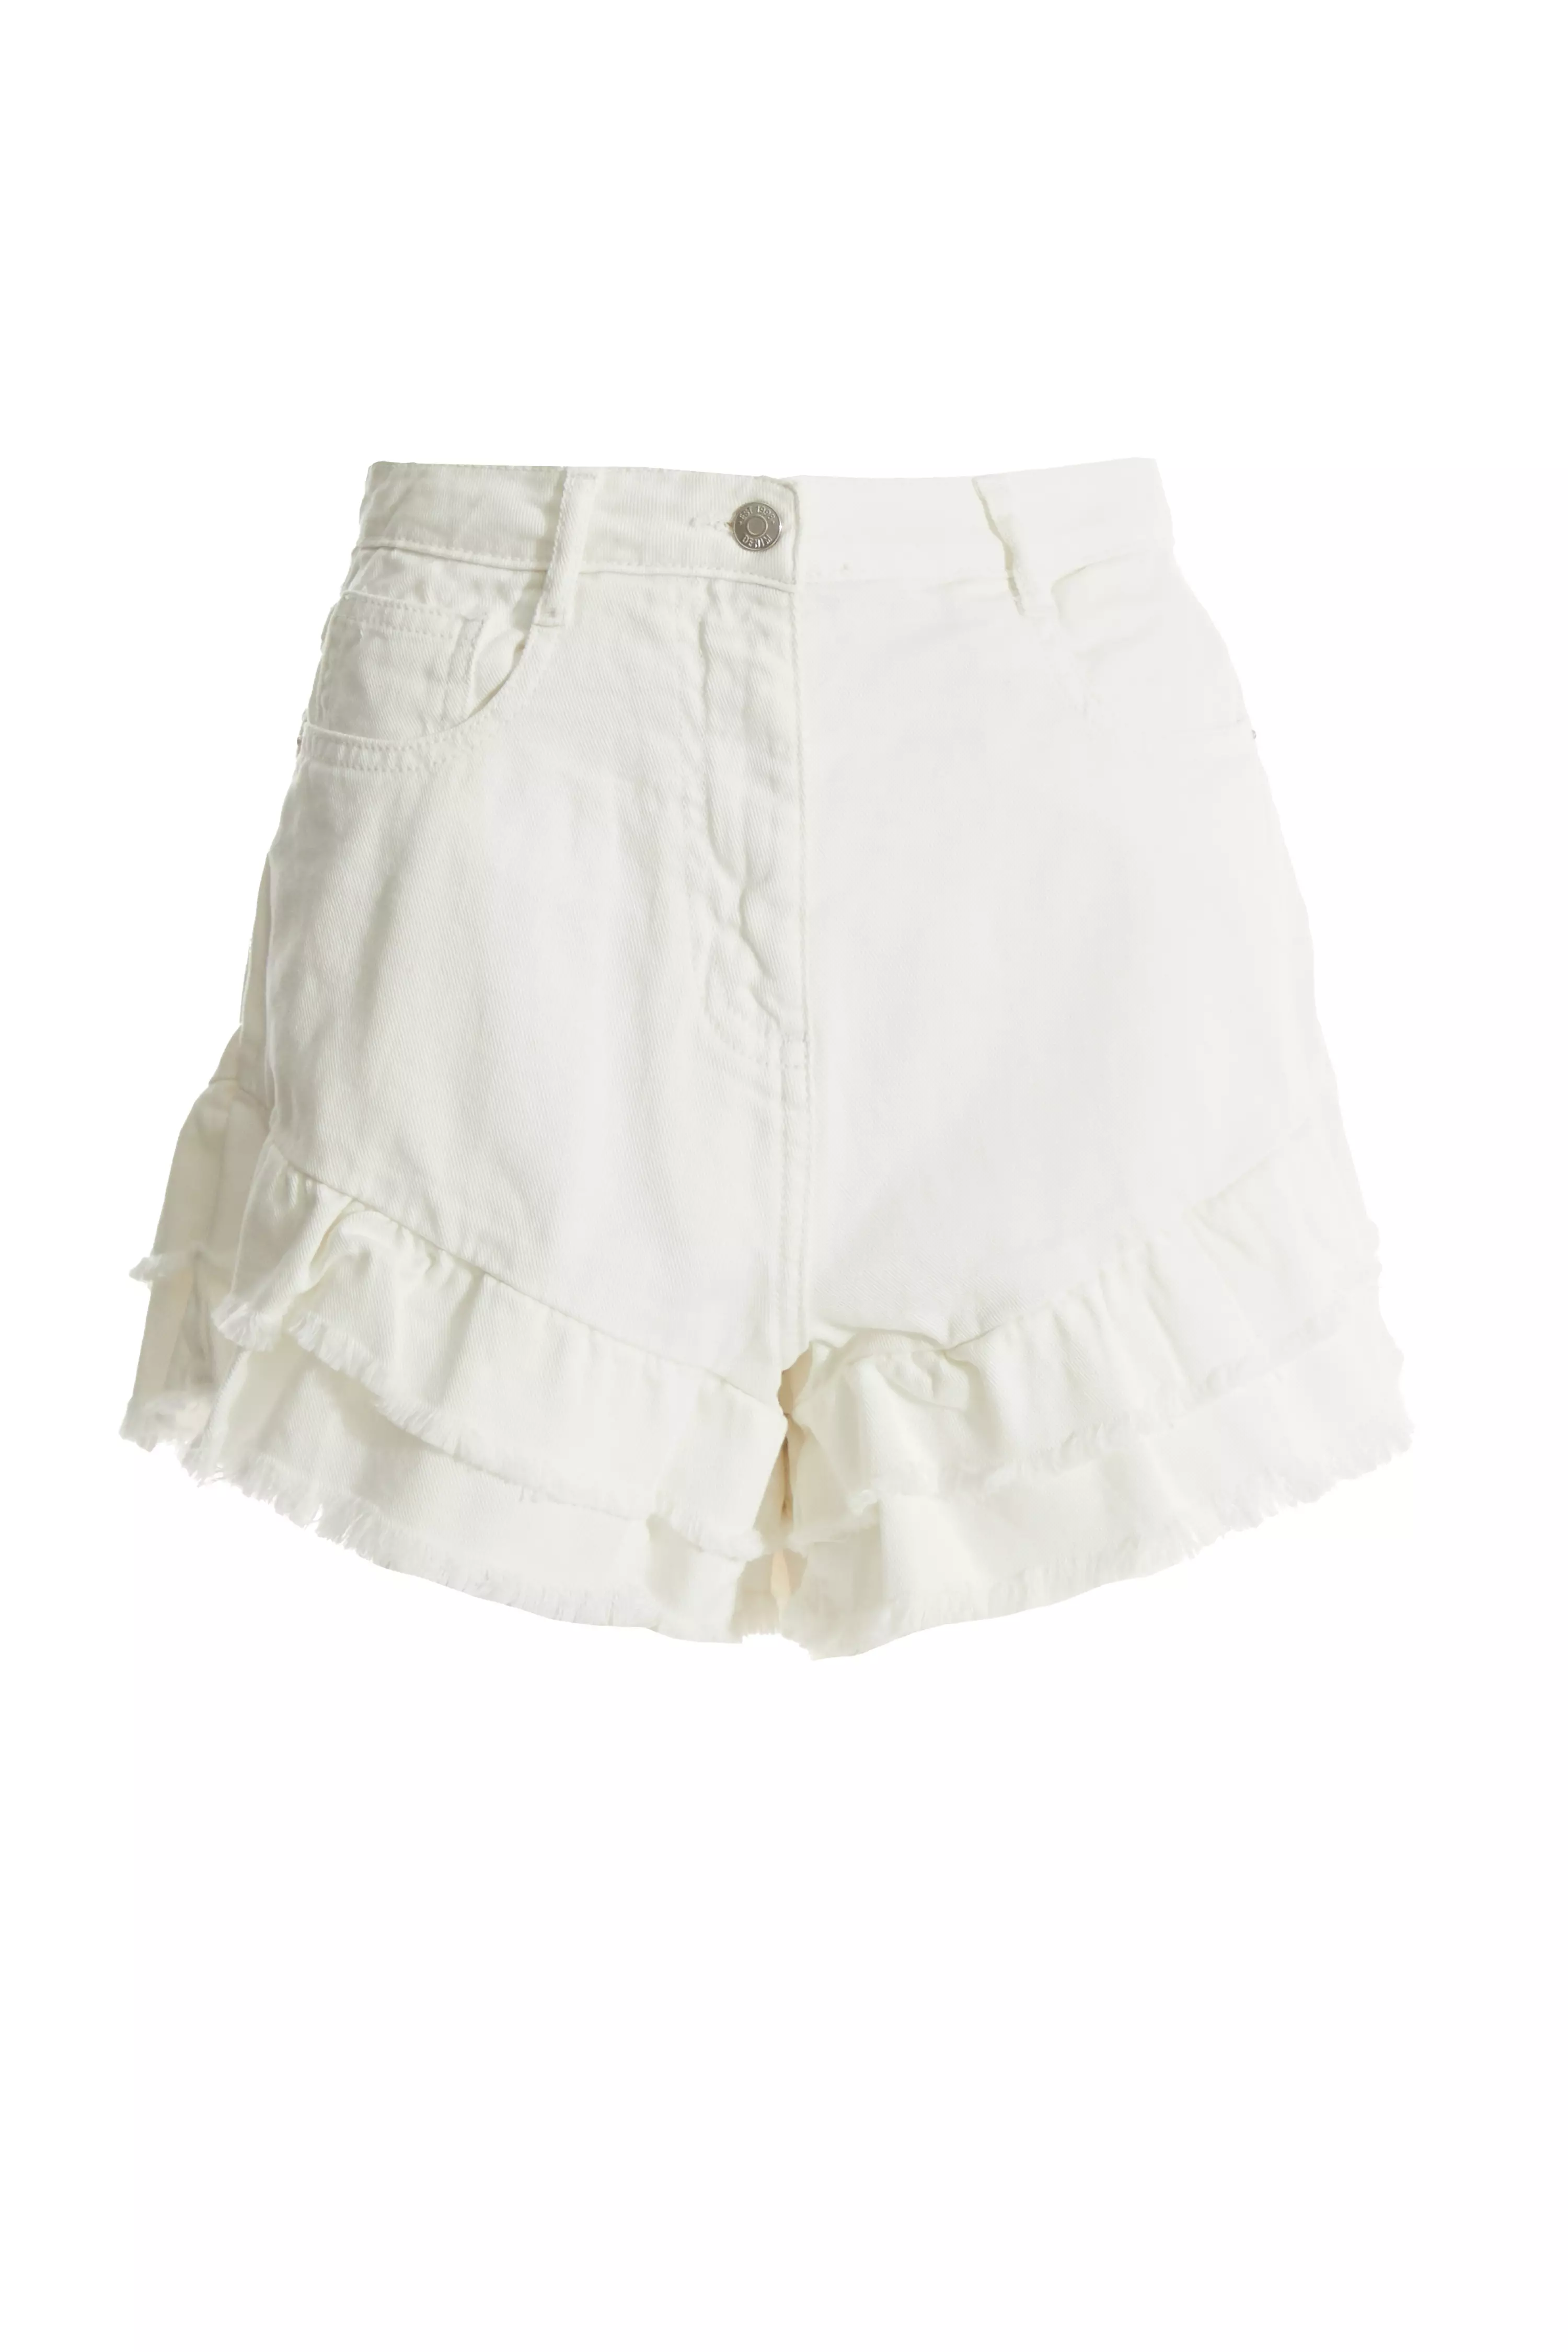 White Denim Frill Shorts